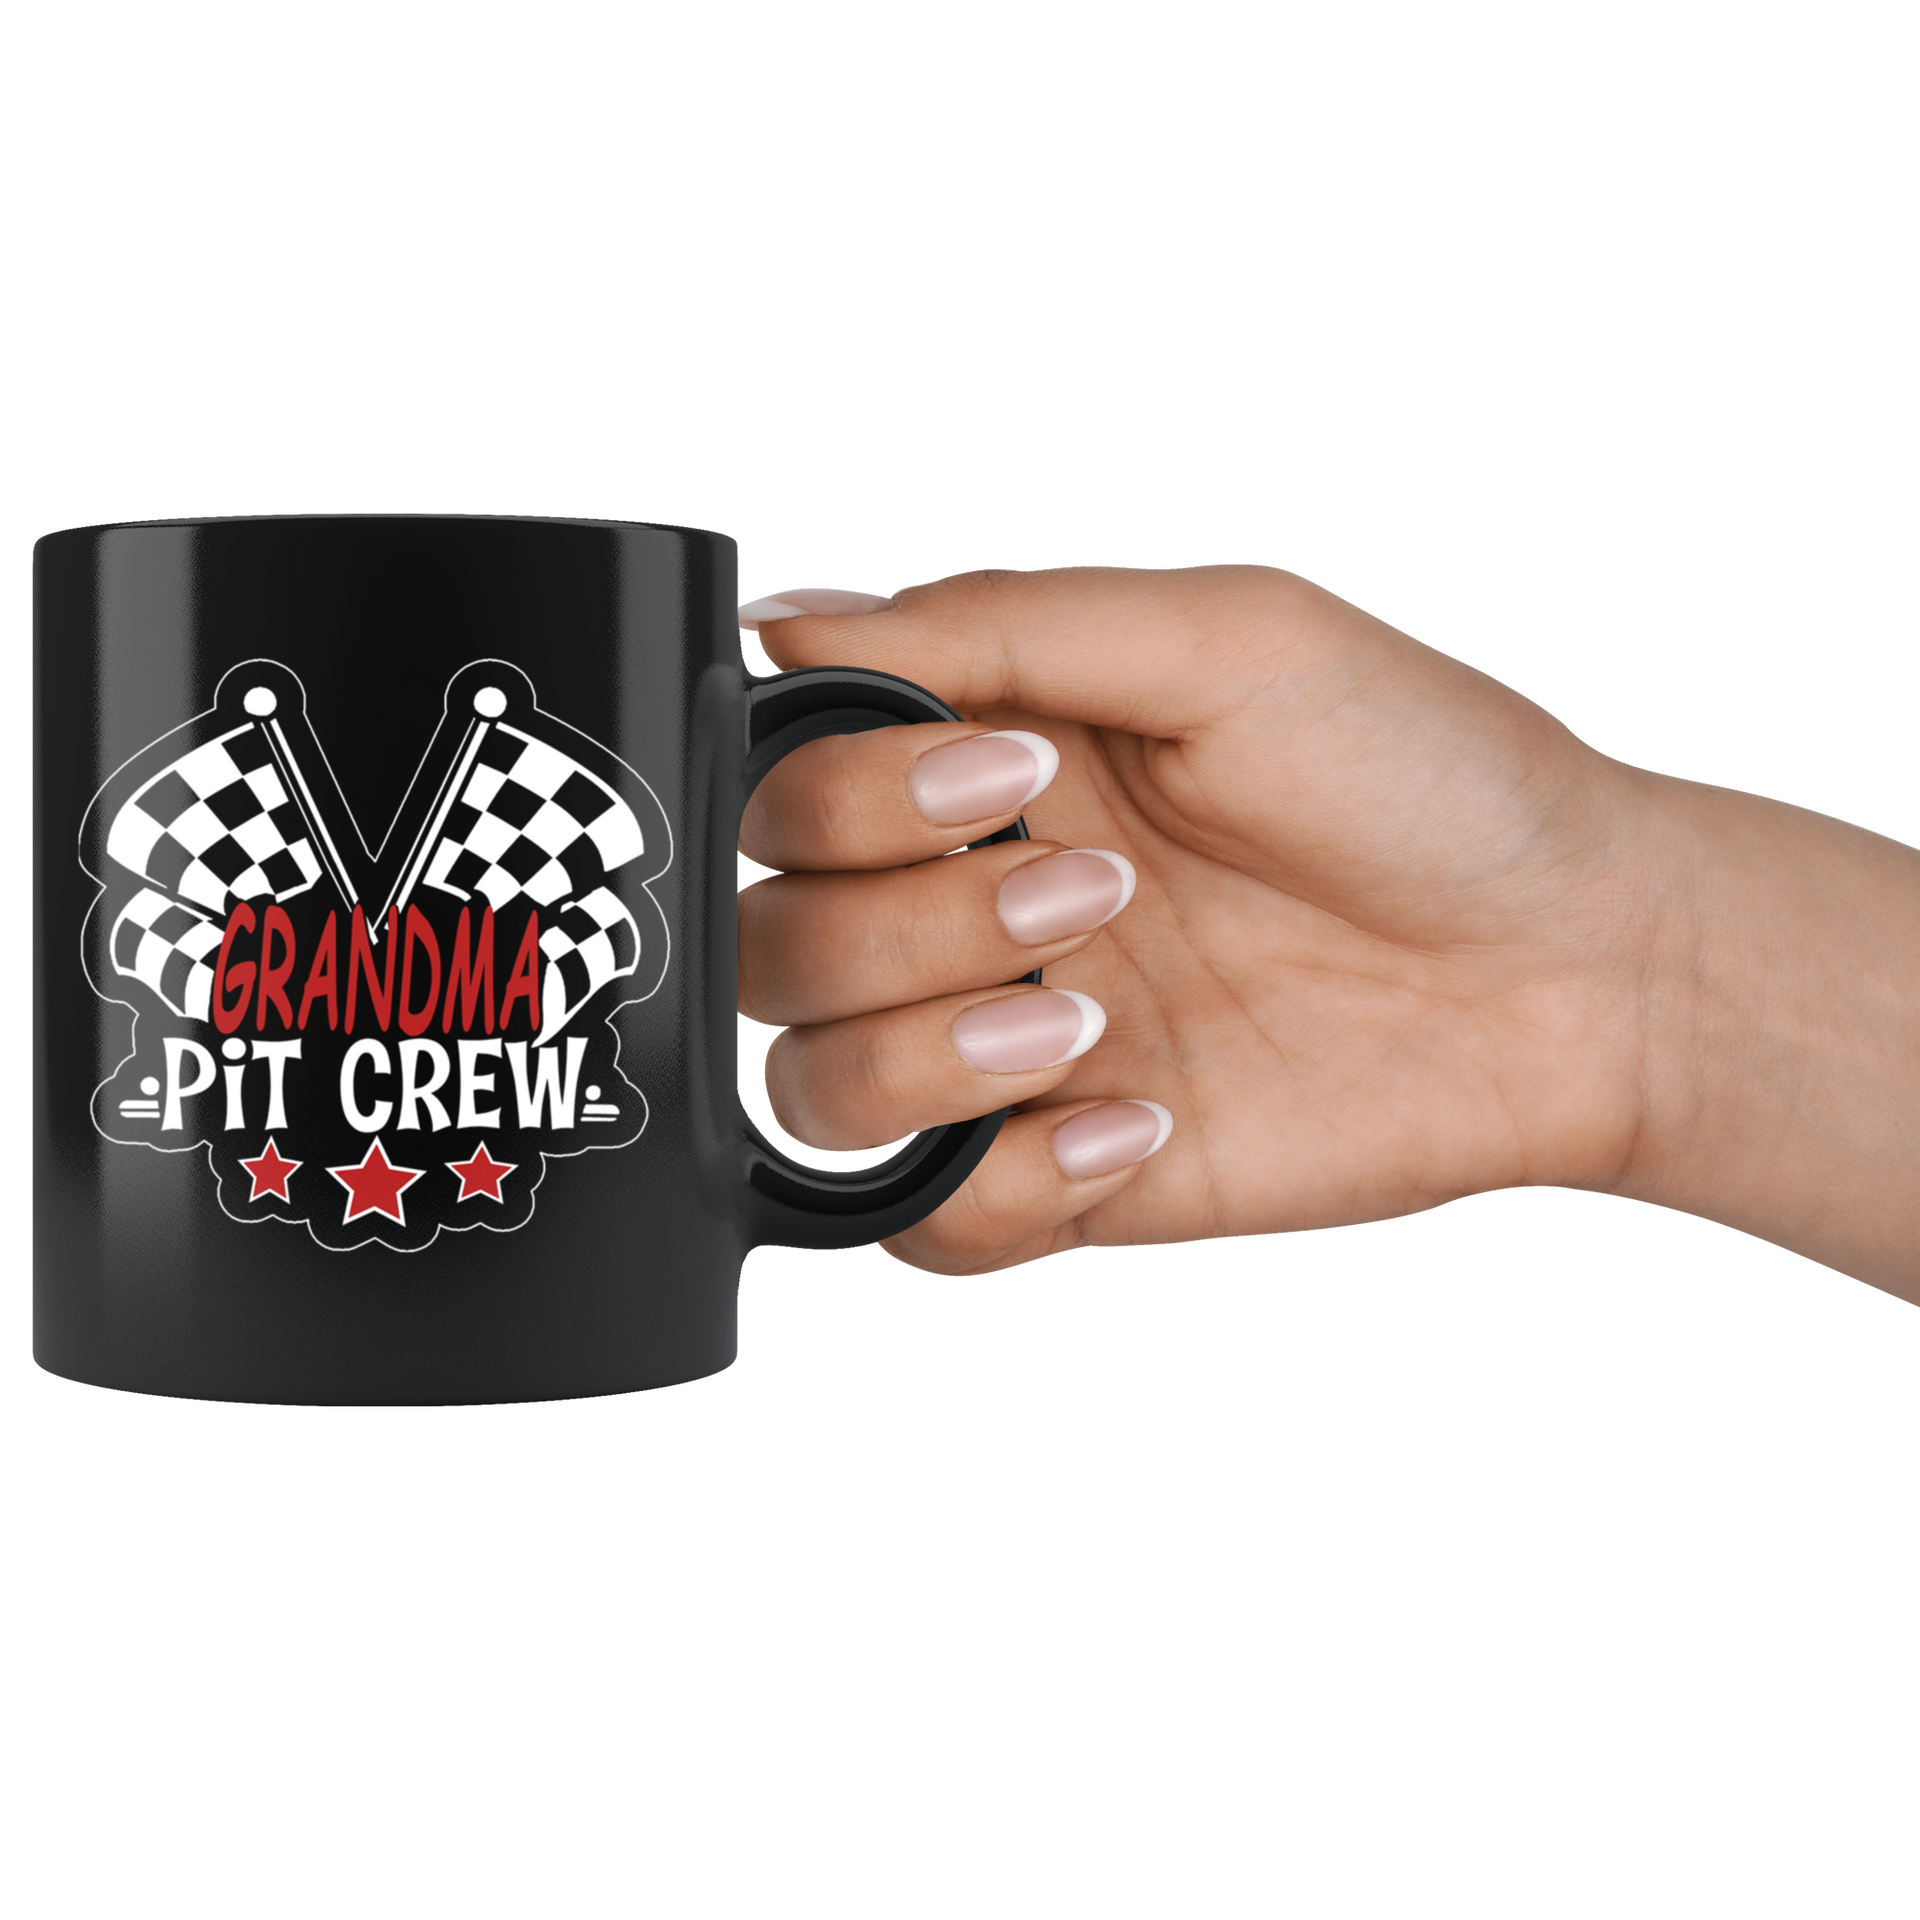 racing grandma mug